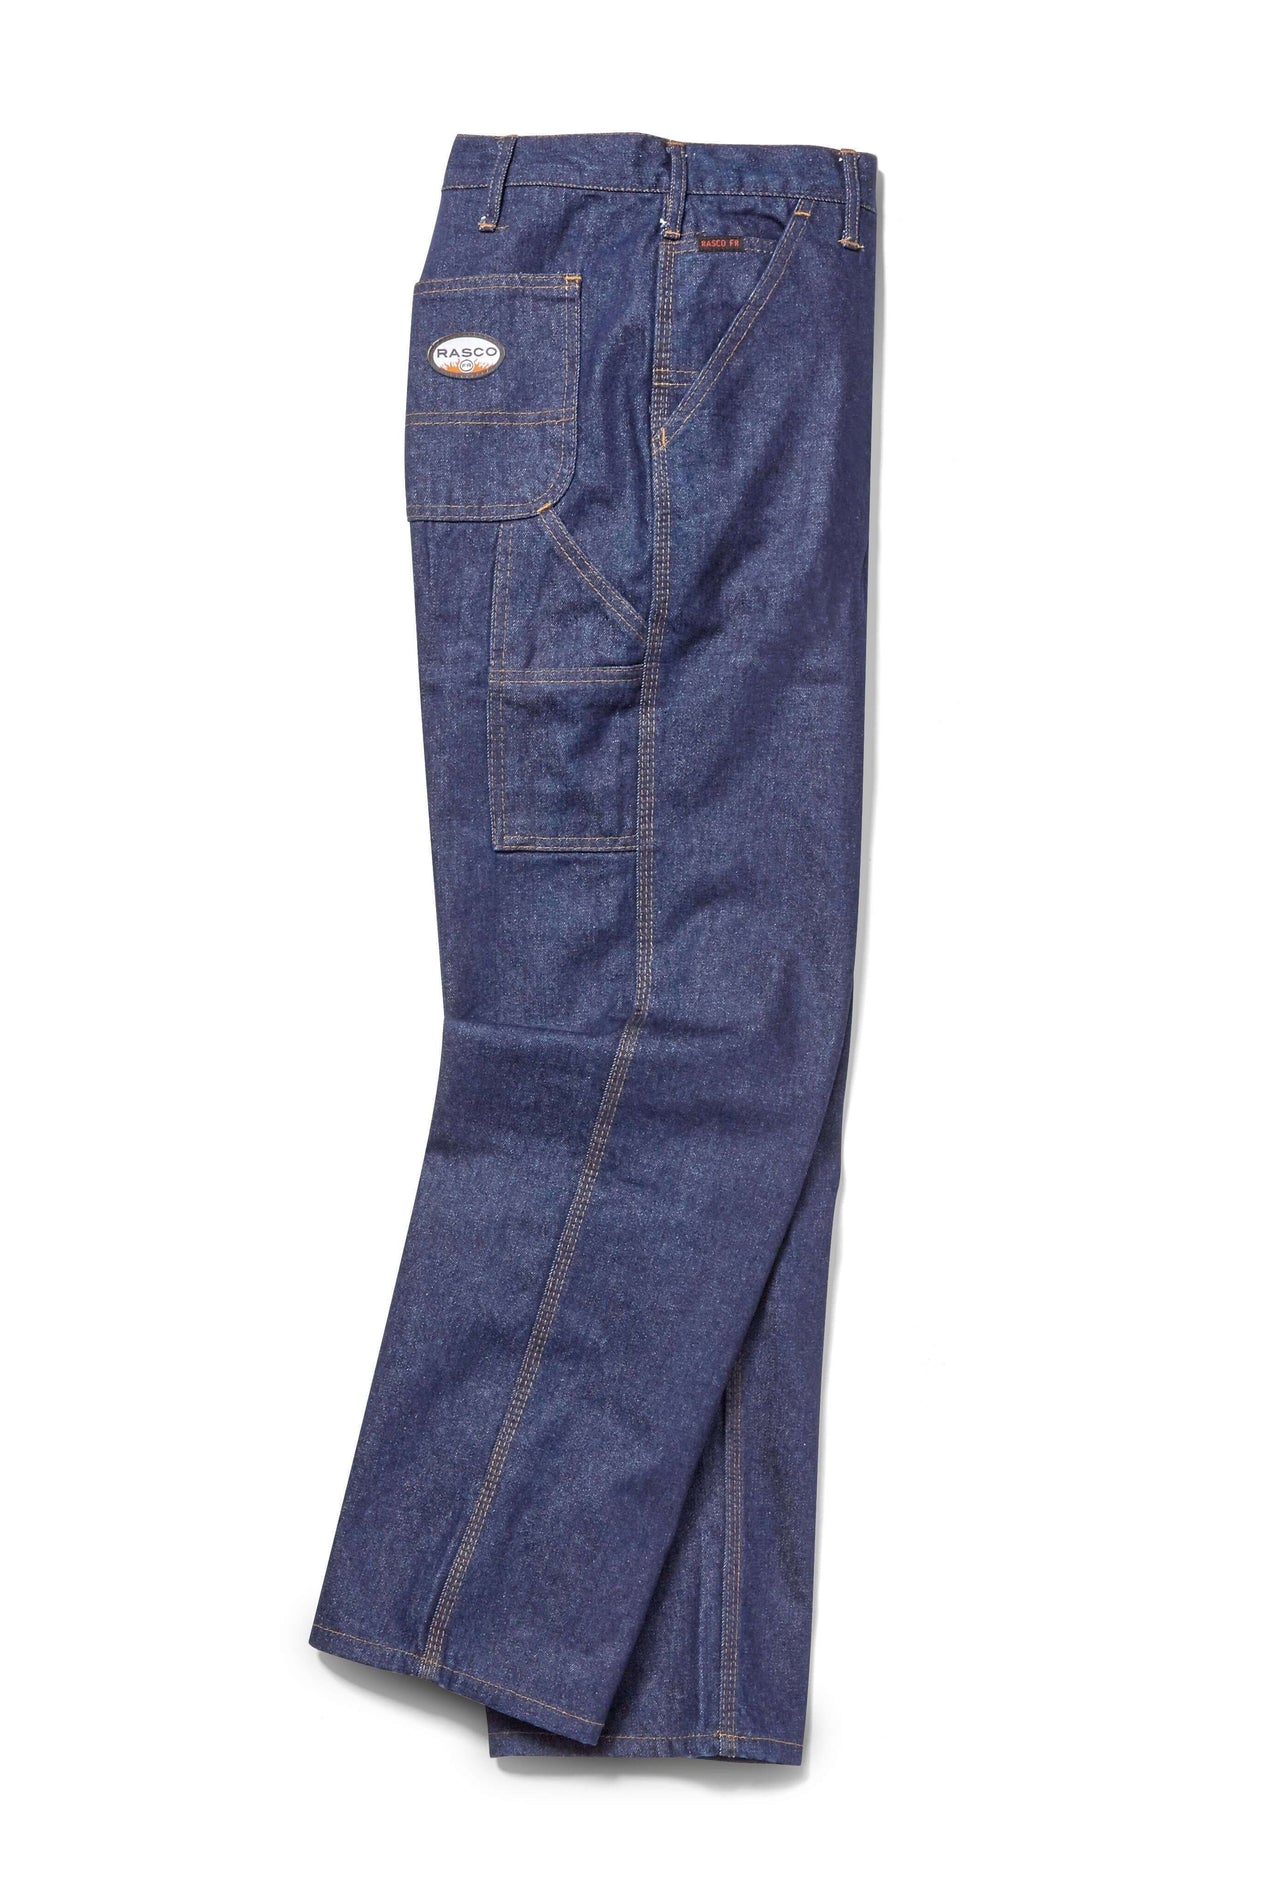 Rasco FR Blue Denim Carpenter Pants FR4507DN